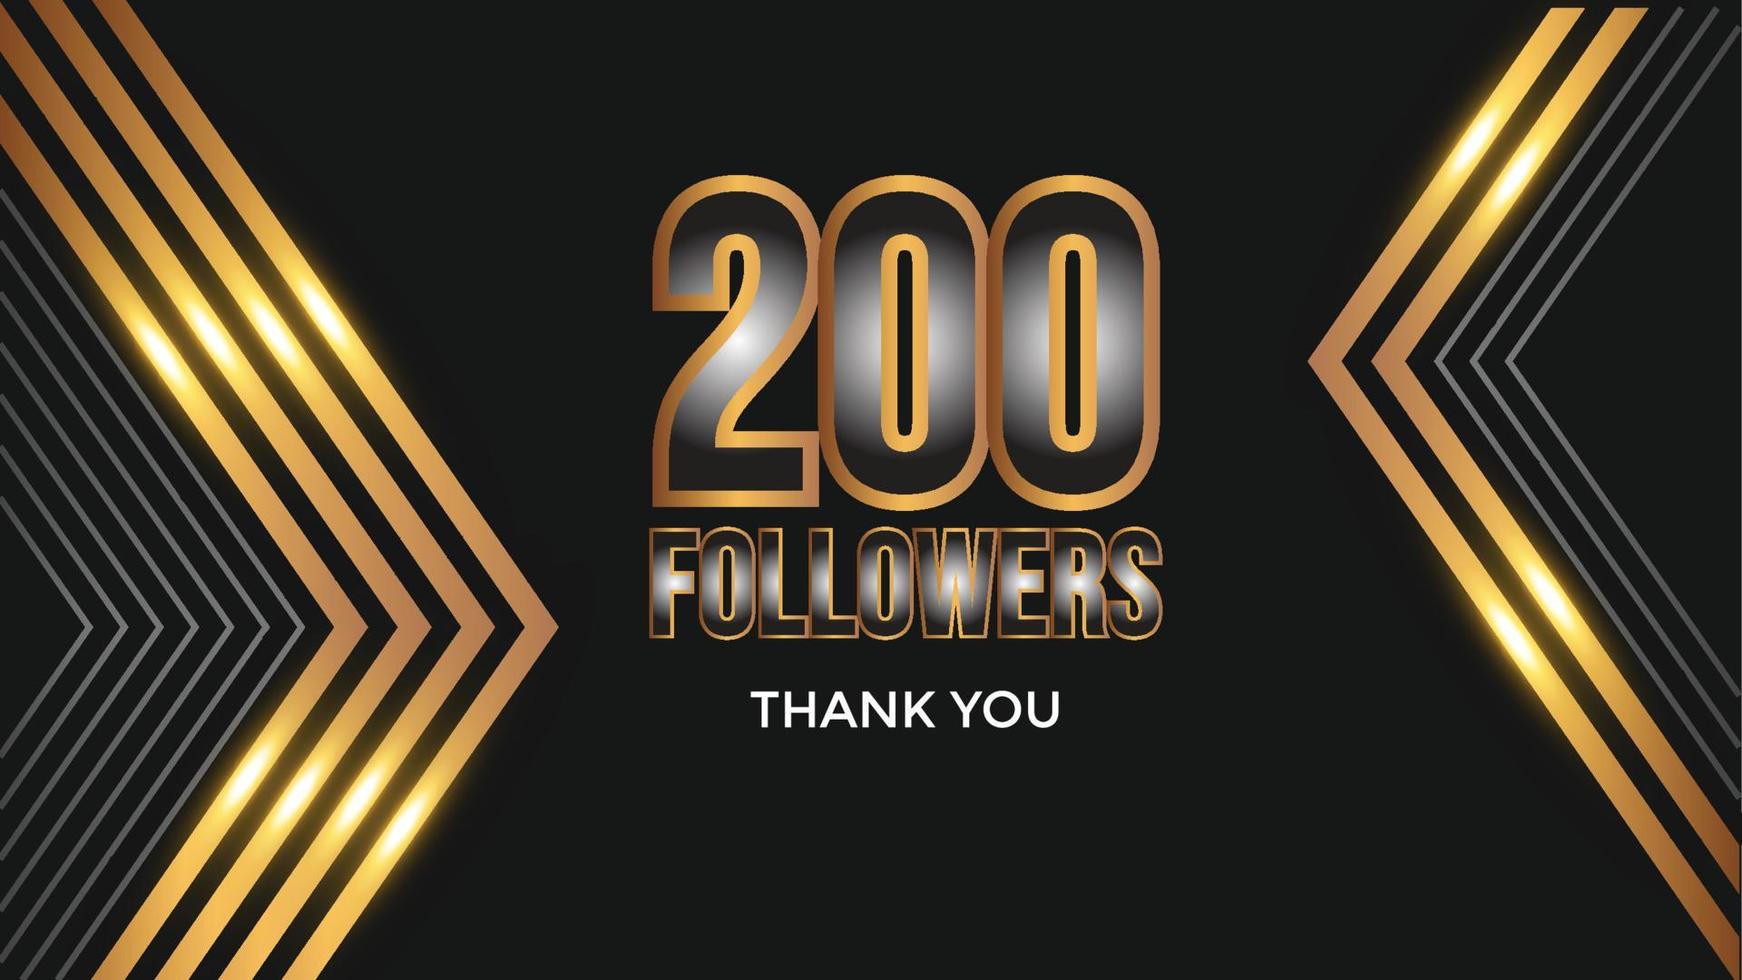 danke vorlage für social media hunderte follower, abonnenten, like. 200 Follower-Benutzer bedanken sich bei 200 Abonnenten und Followern vektor